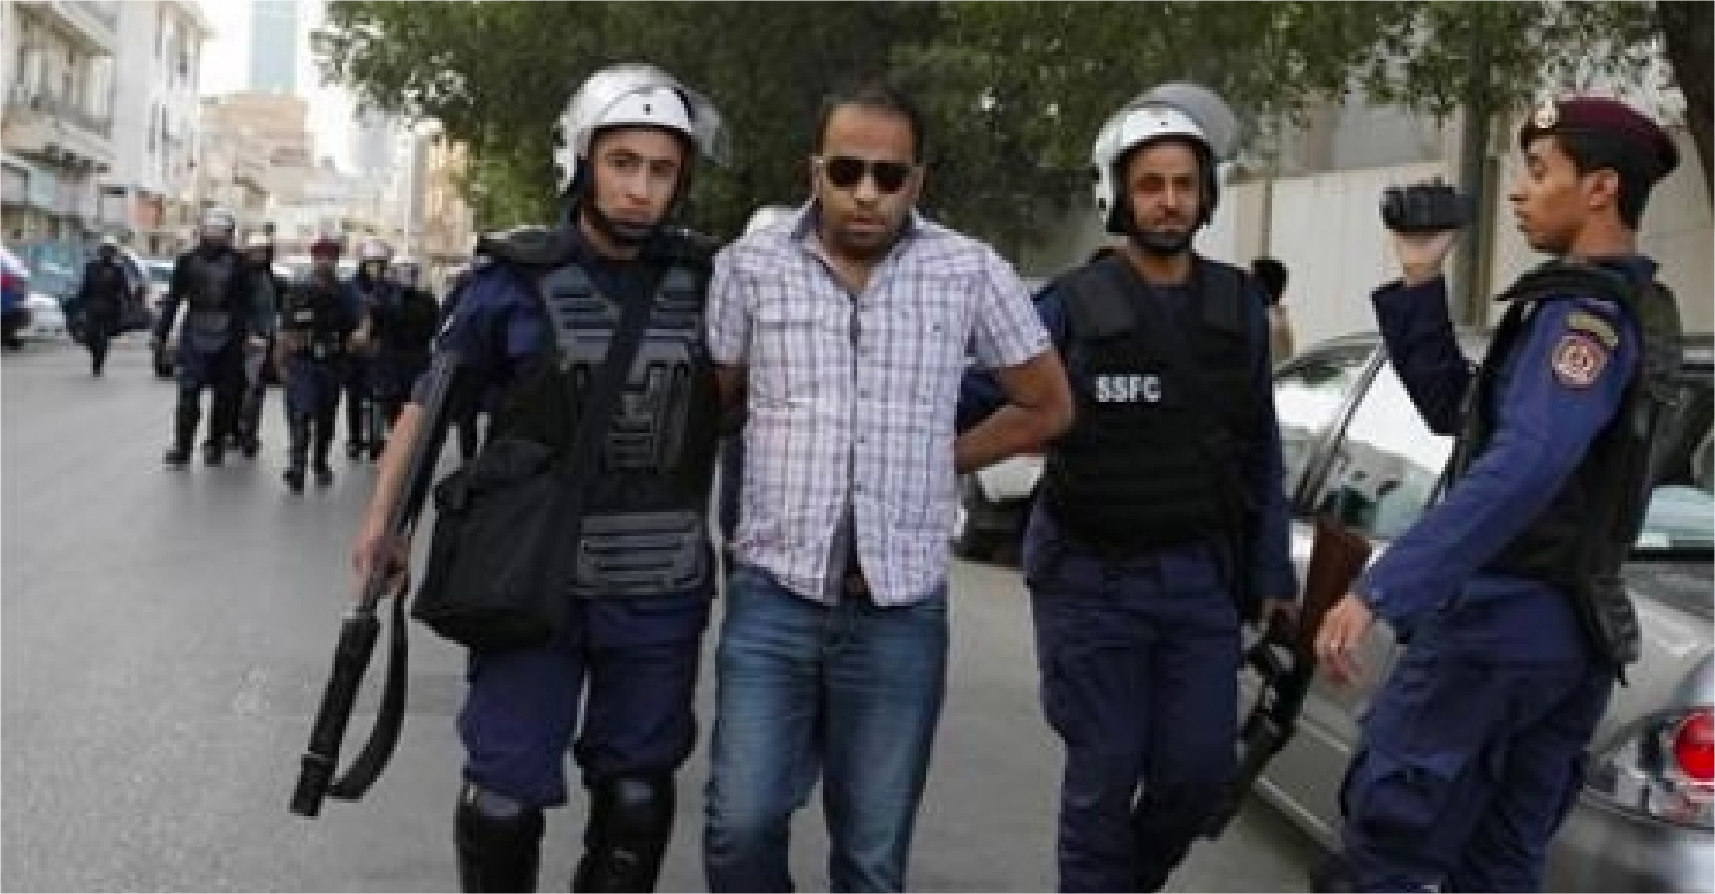 صورة البحرين تسقط الجنسية عن مجموعة مواطنين خونة لتستبدلهم بأجانب وطنيين